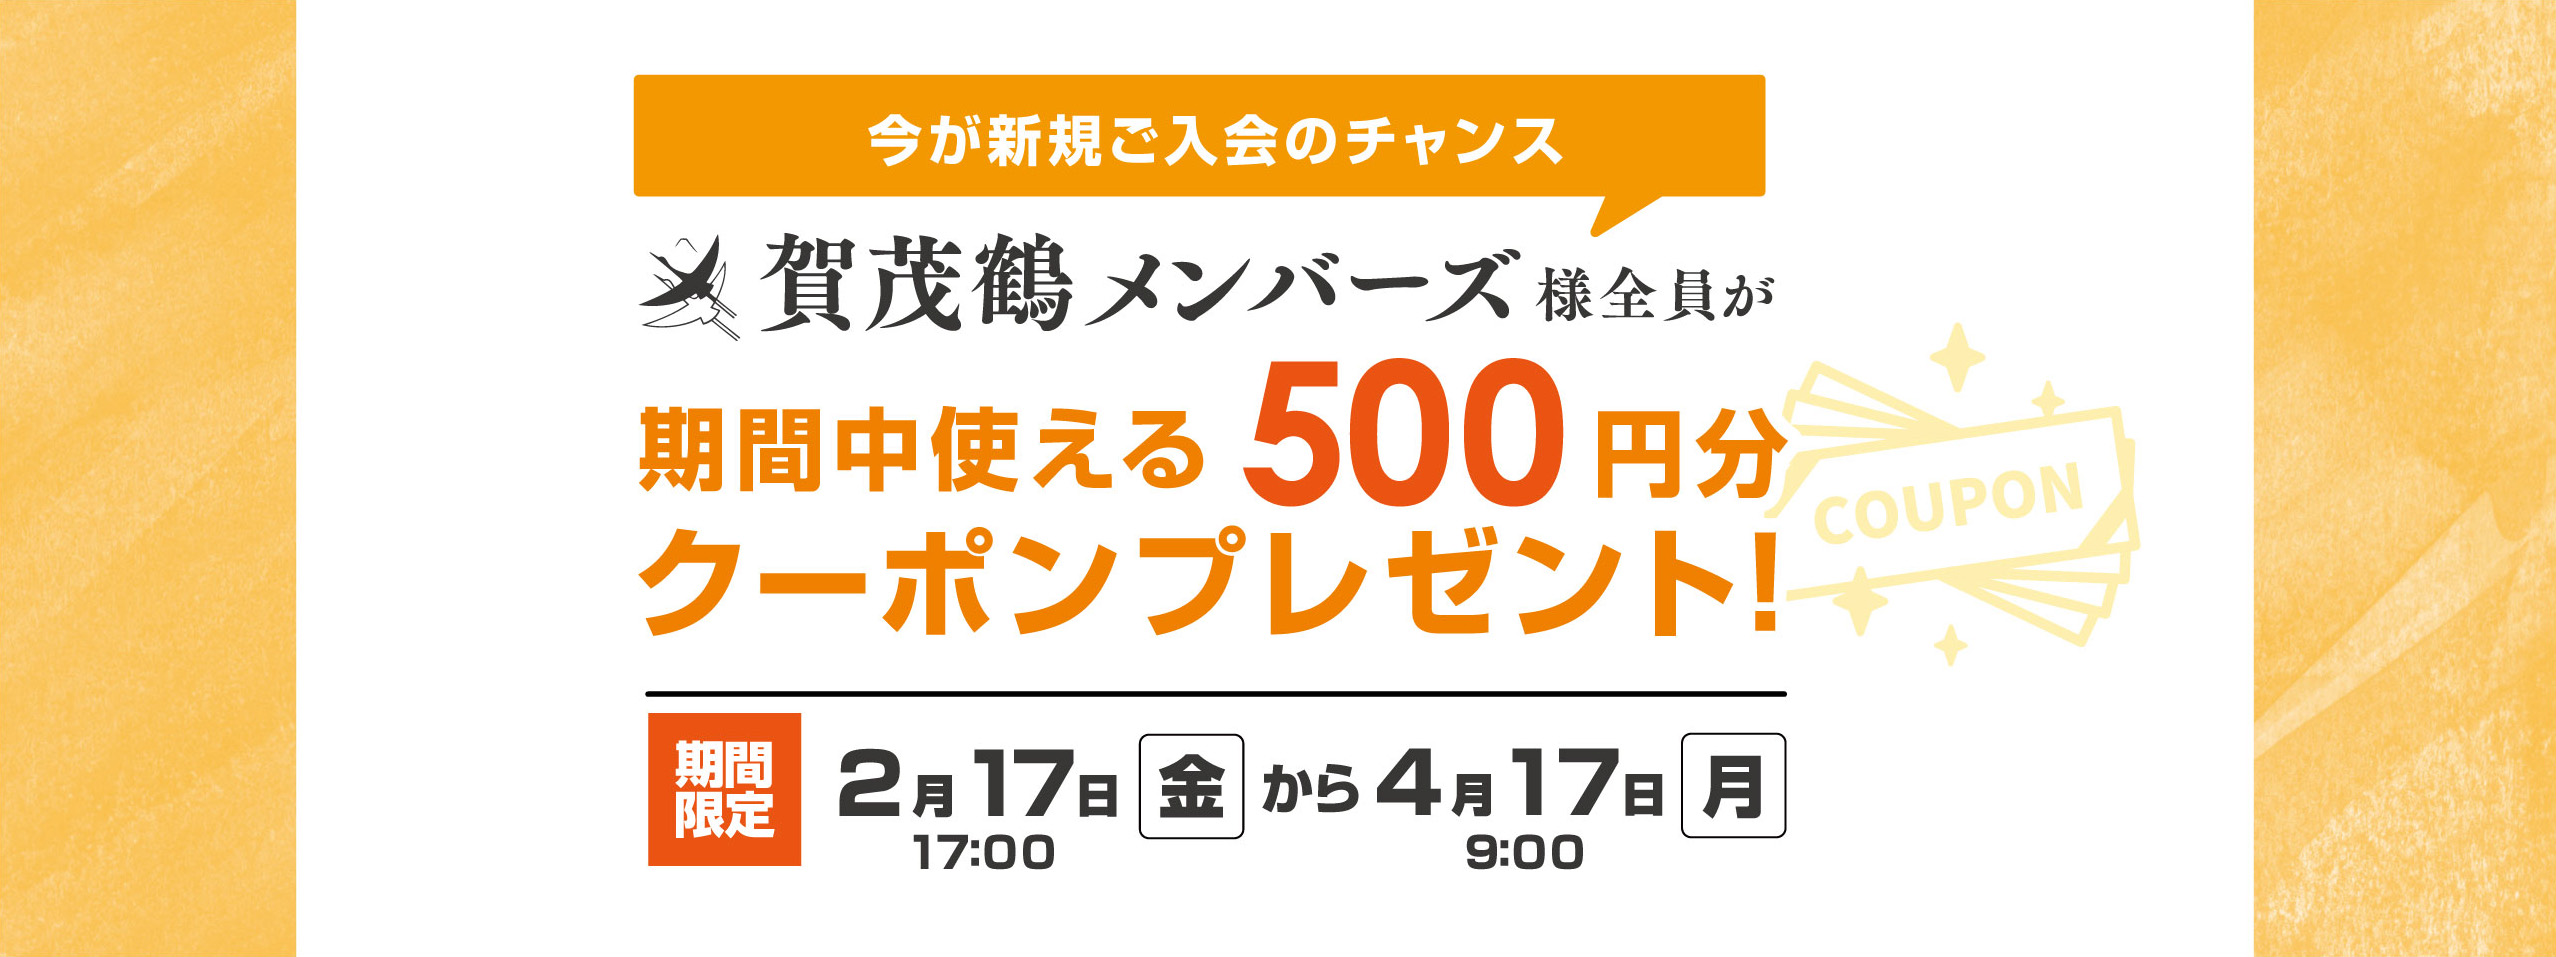 500円クーポンプレゼントキャンペーン